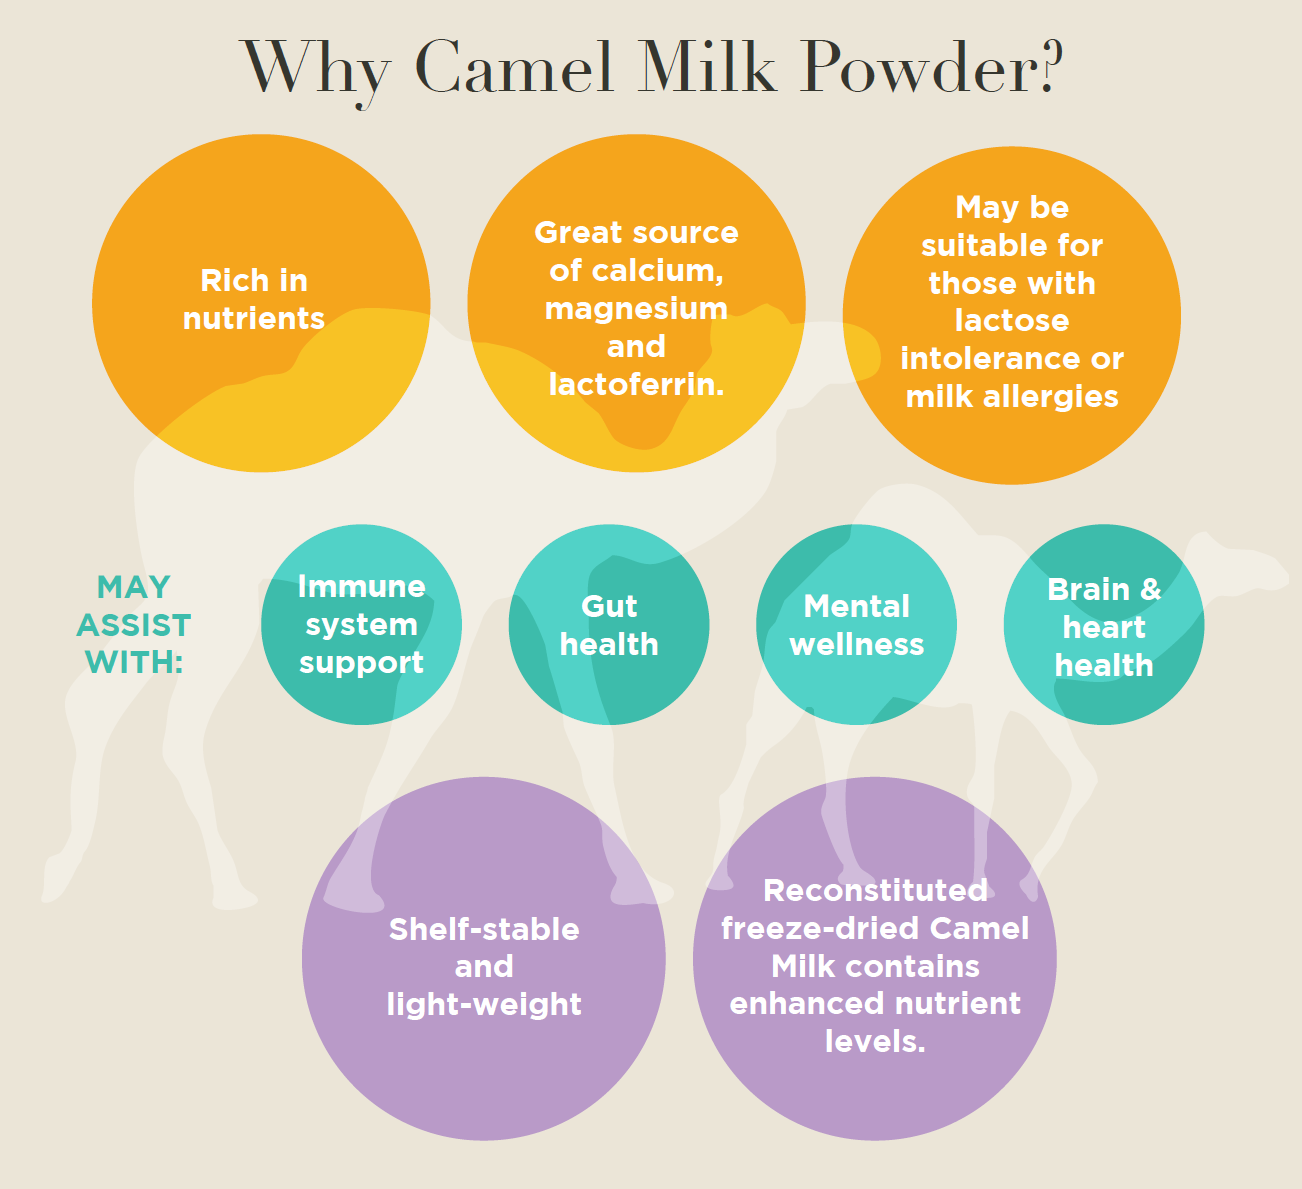 Why Camel Milk Powder?